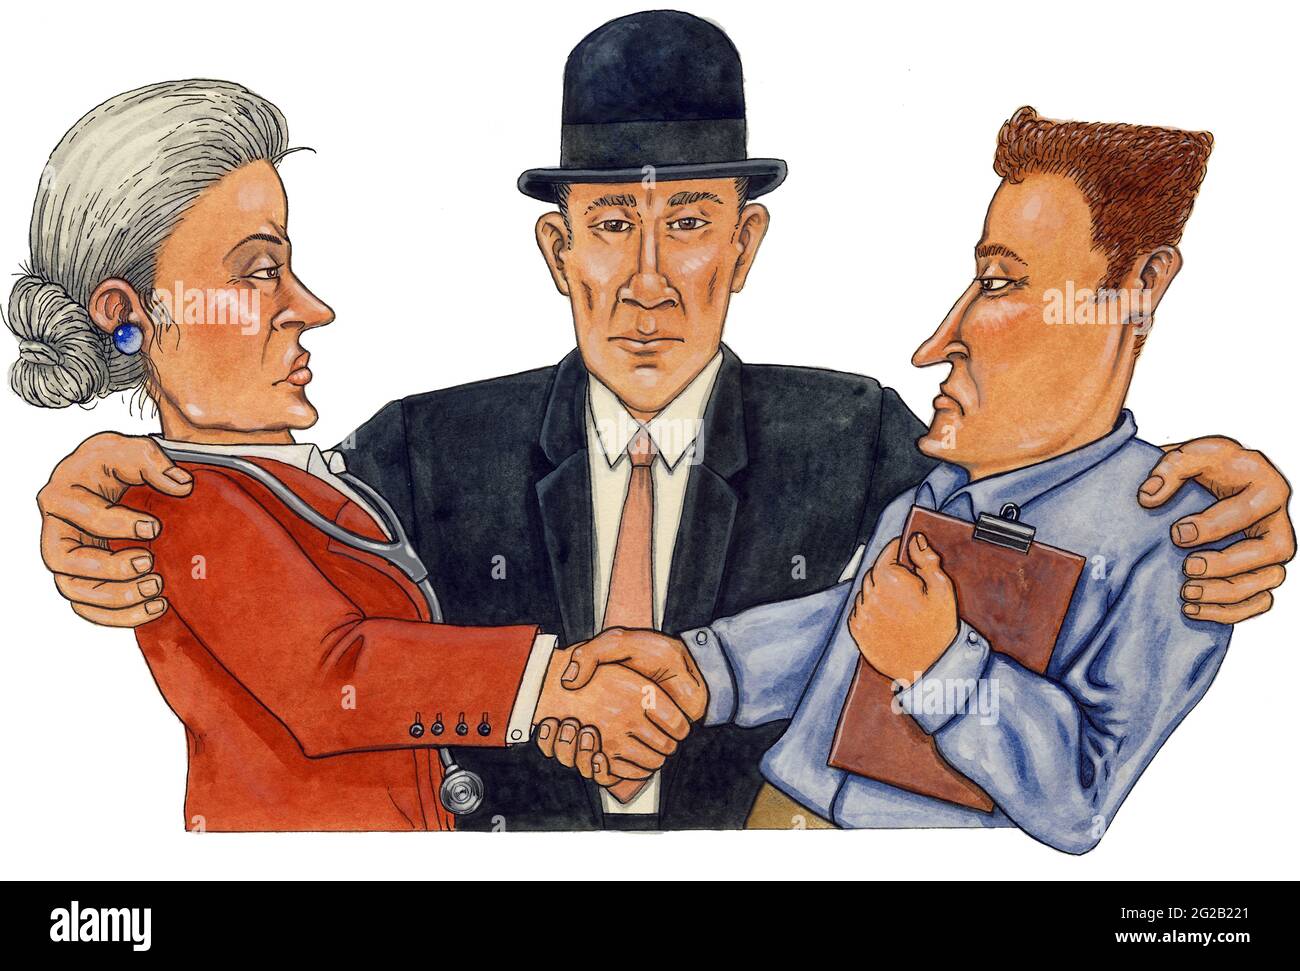 Konzeptkunst-Illustration mit einem Arzt und Praxismanager, der widerwillig vom Großunternehmen beeinflusst wird, vertreten durch einen Mann in einem Melonenhut. Verkaufswelle im NHS Stockfoto